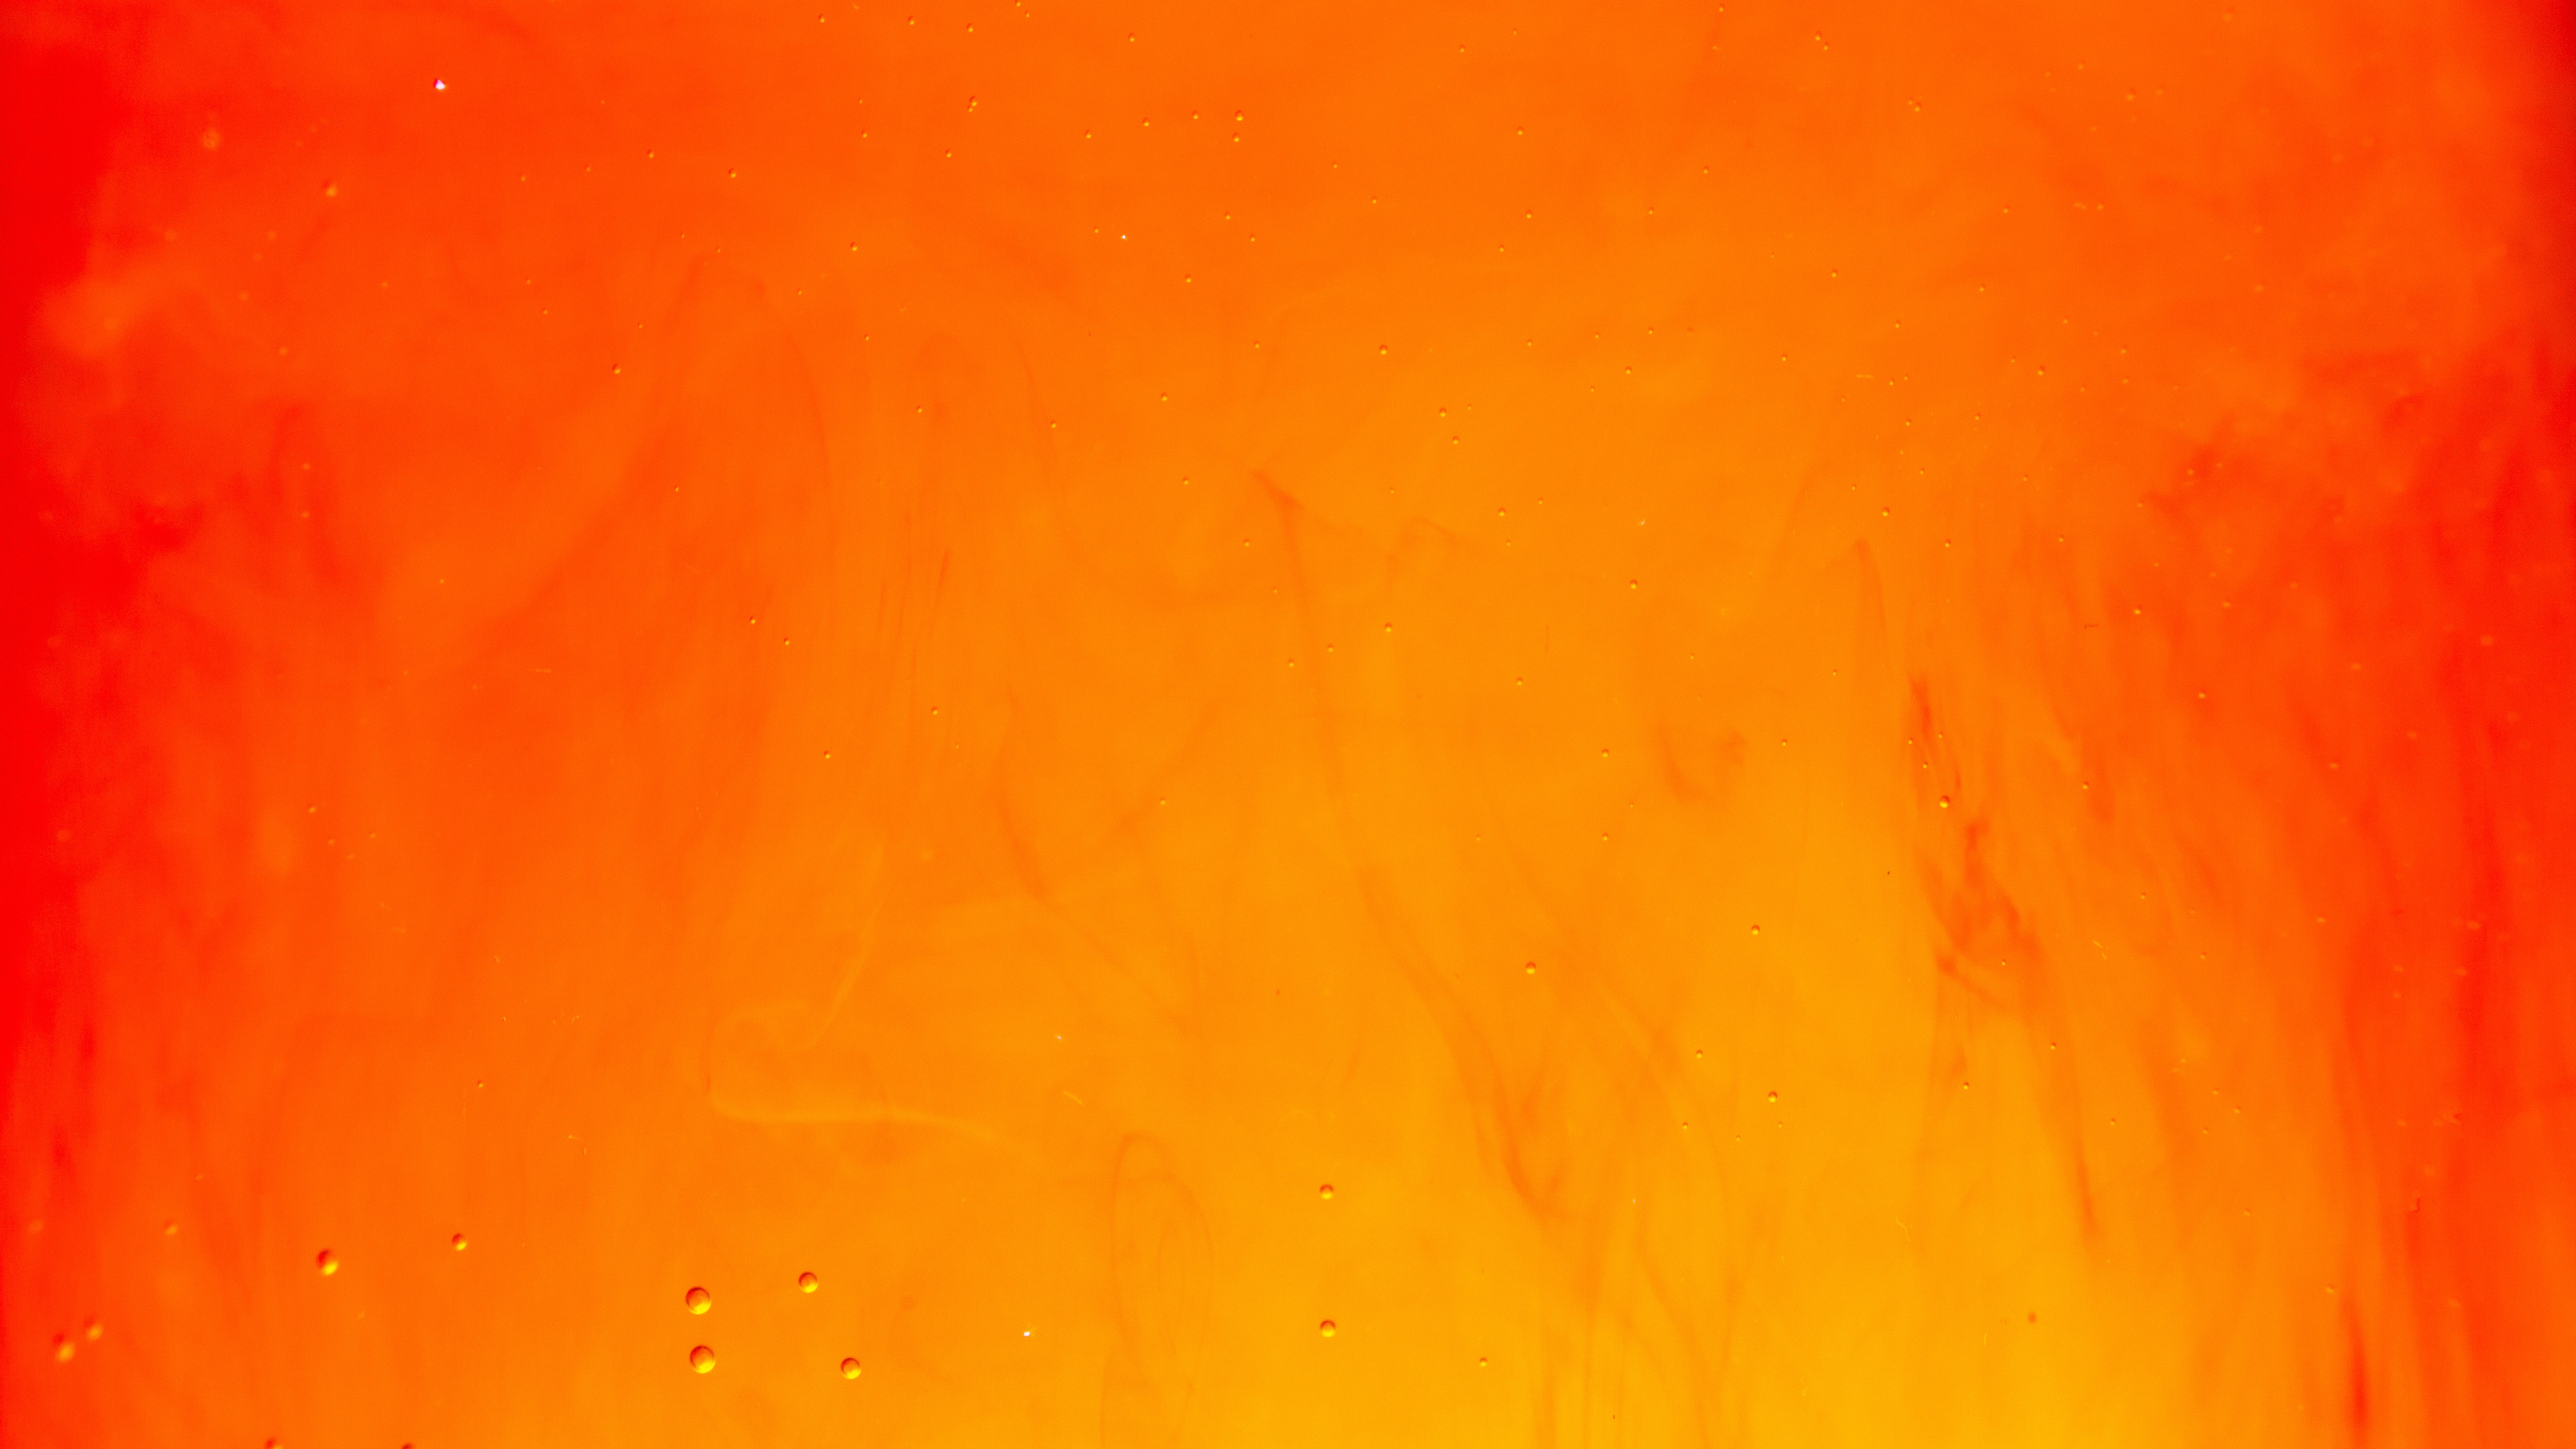 Làm mới màn hình điện thoại hay máy tính của bạn với hình nền Orange 4k Ultra HD Wallpaper by Lucas Benjamin thật sắc nét và đẹp mắt. Bạn sẽ được choáng ngợp bởi chất lượng hình ảnh tuyệt vời này. Hãy khám phá vẻ đẹp của nền Orange 4k Ultra HD Wallpaper by Lucas Benjamin ngay hôm nay!